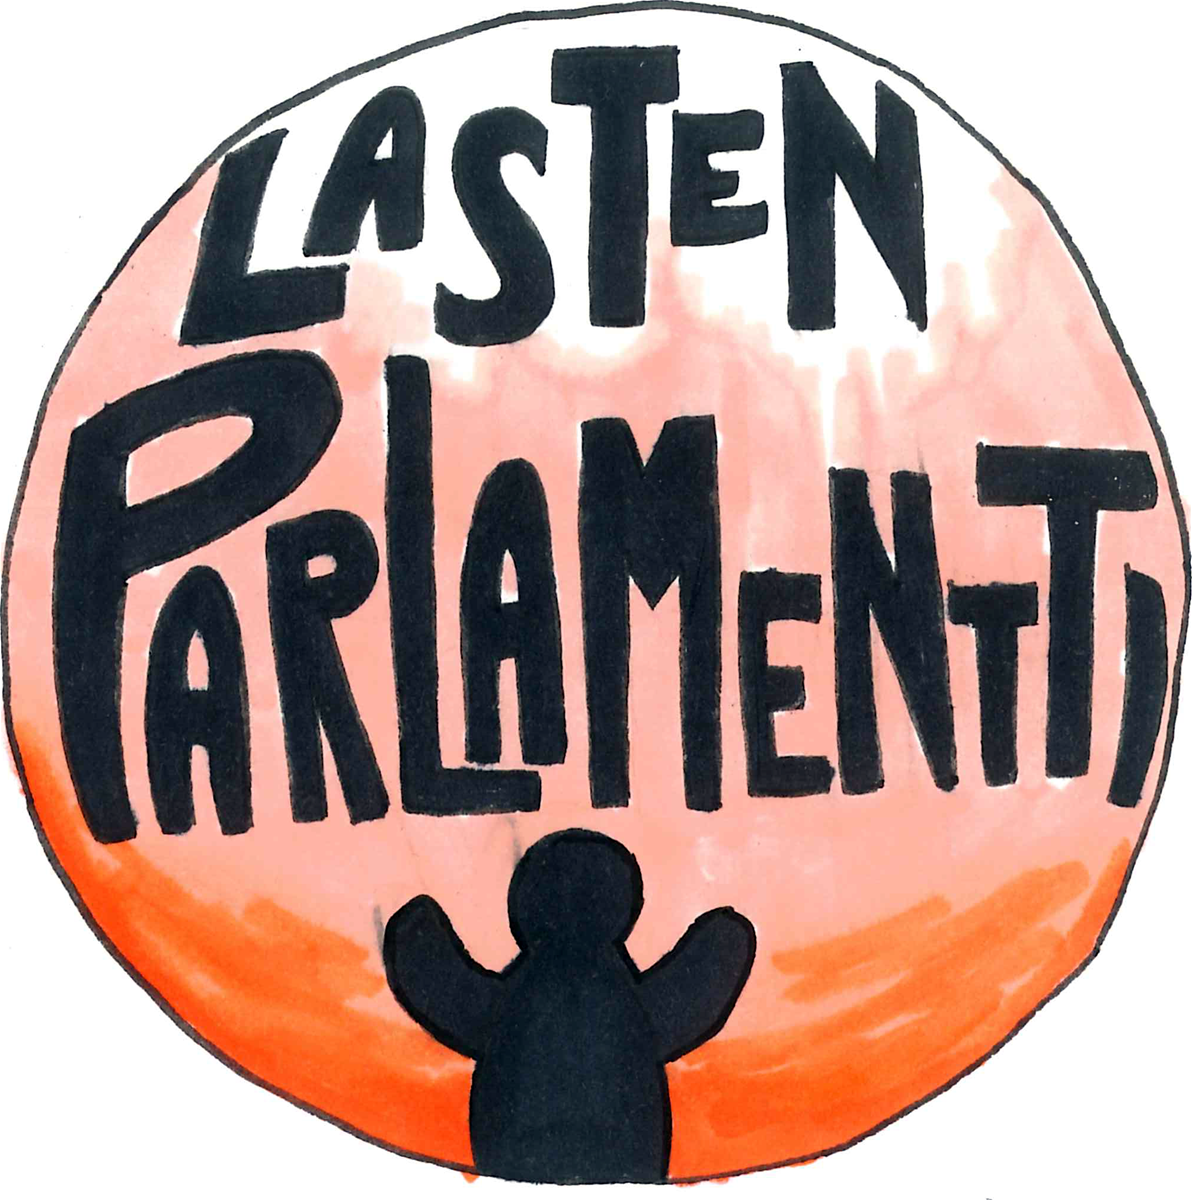 Lasten Parlamentin logo, jossa oranssin ja valkean värisellä pyöreällä taustalla Lasten Parlamentti -teksti ja kädet ylhäällä seisova ihmishahmo.